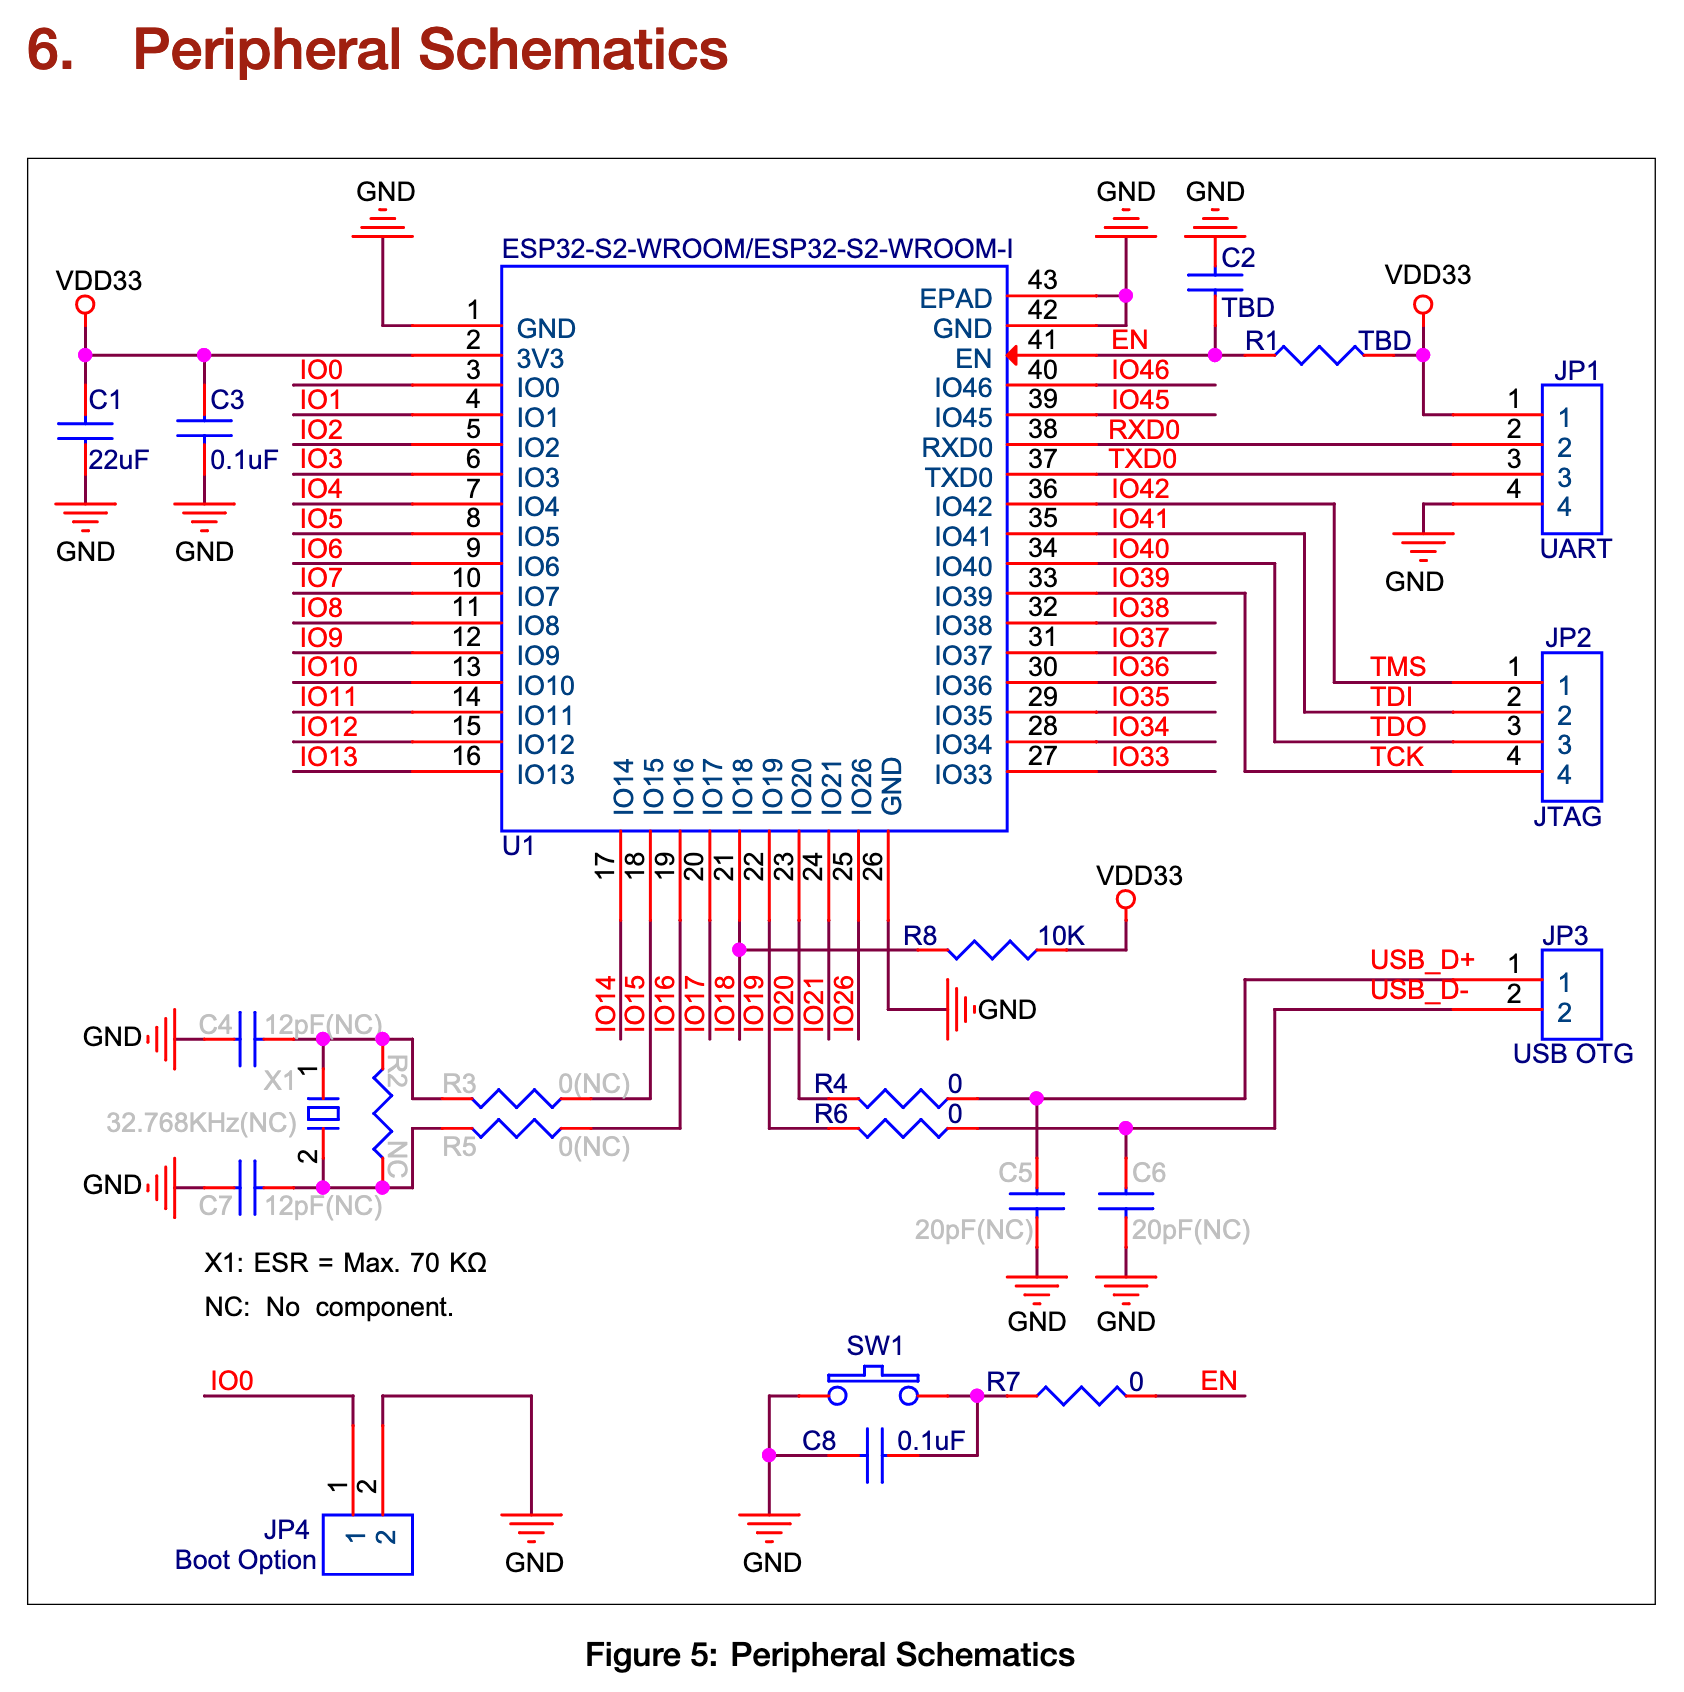 Peripheral Schematics